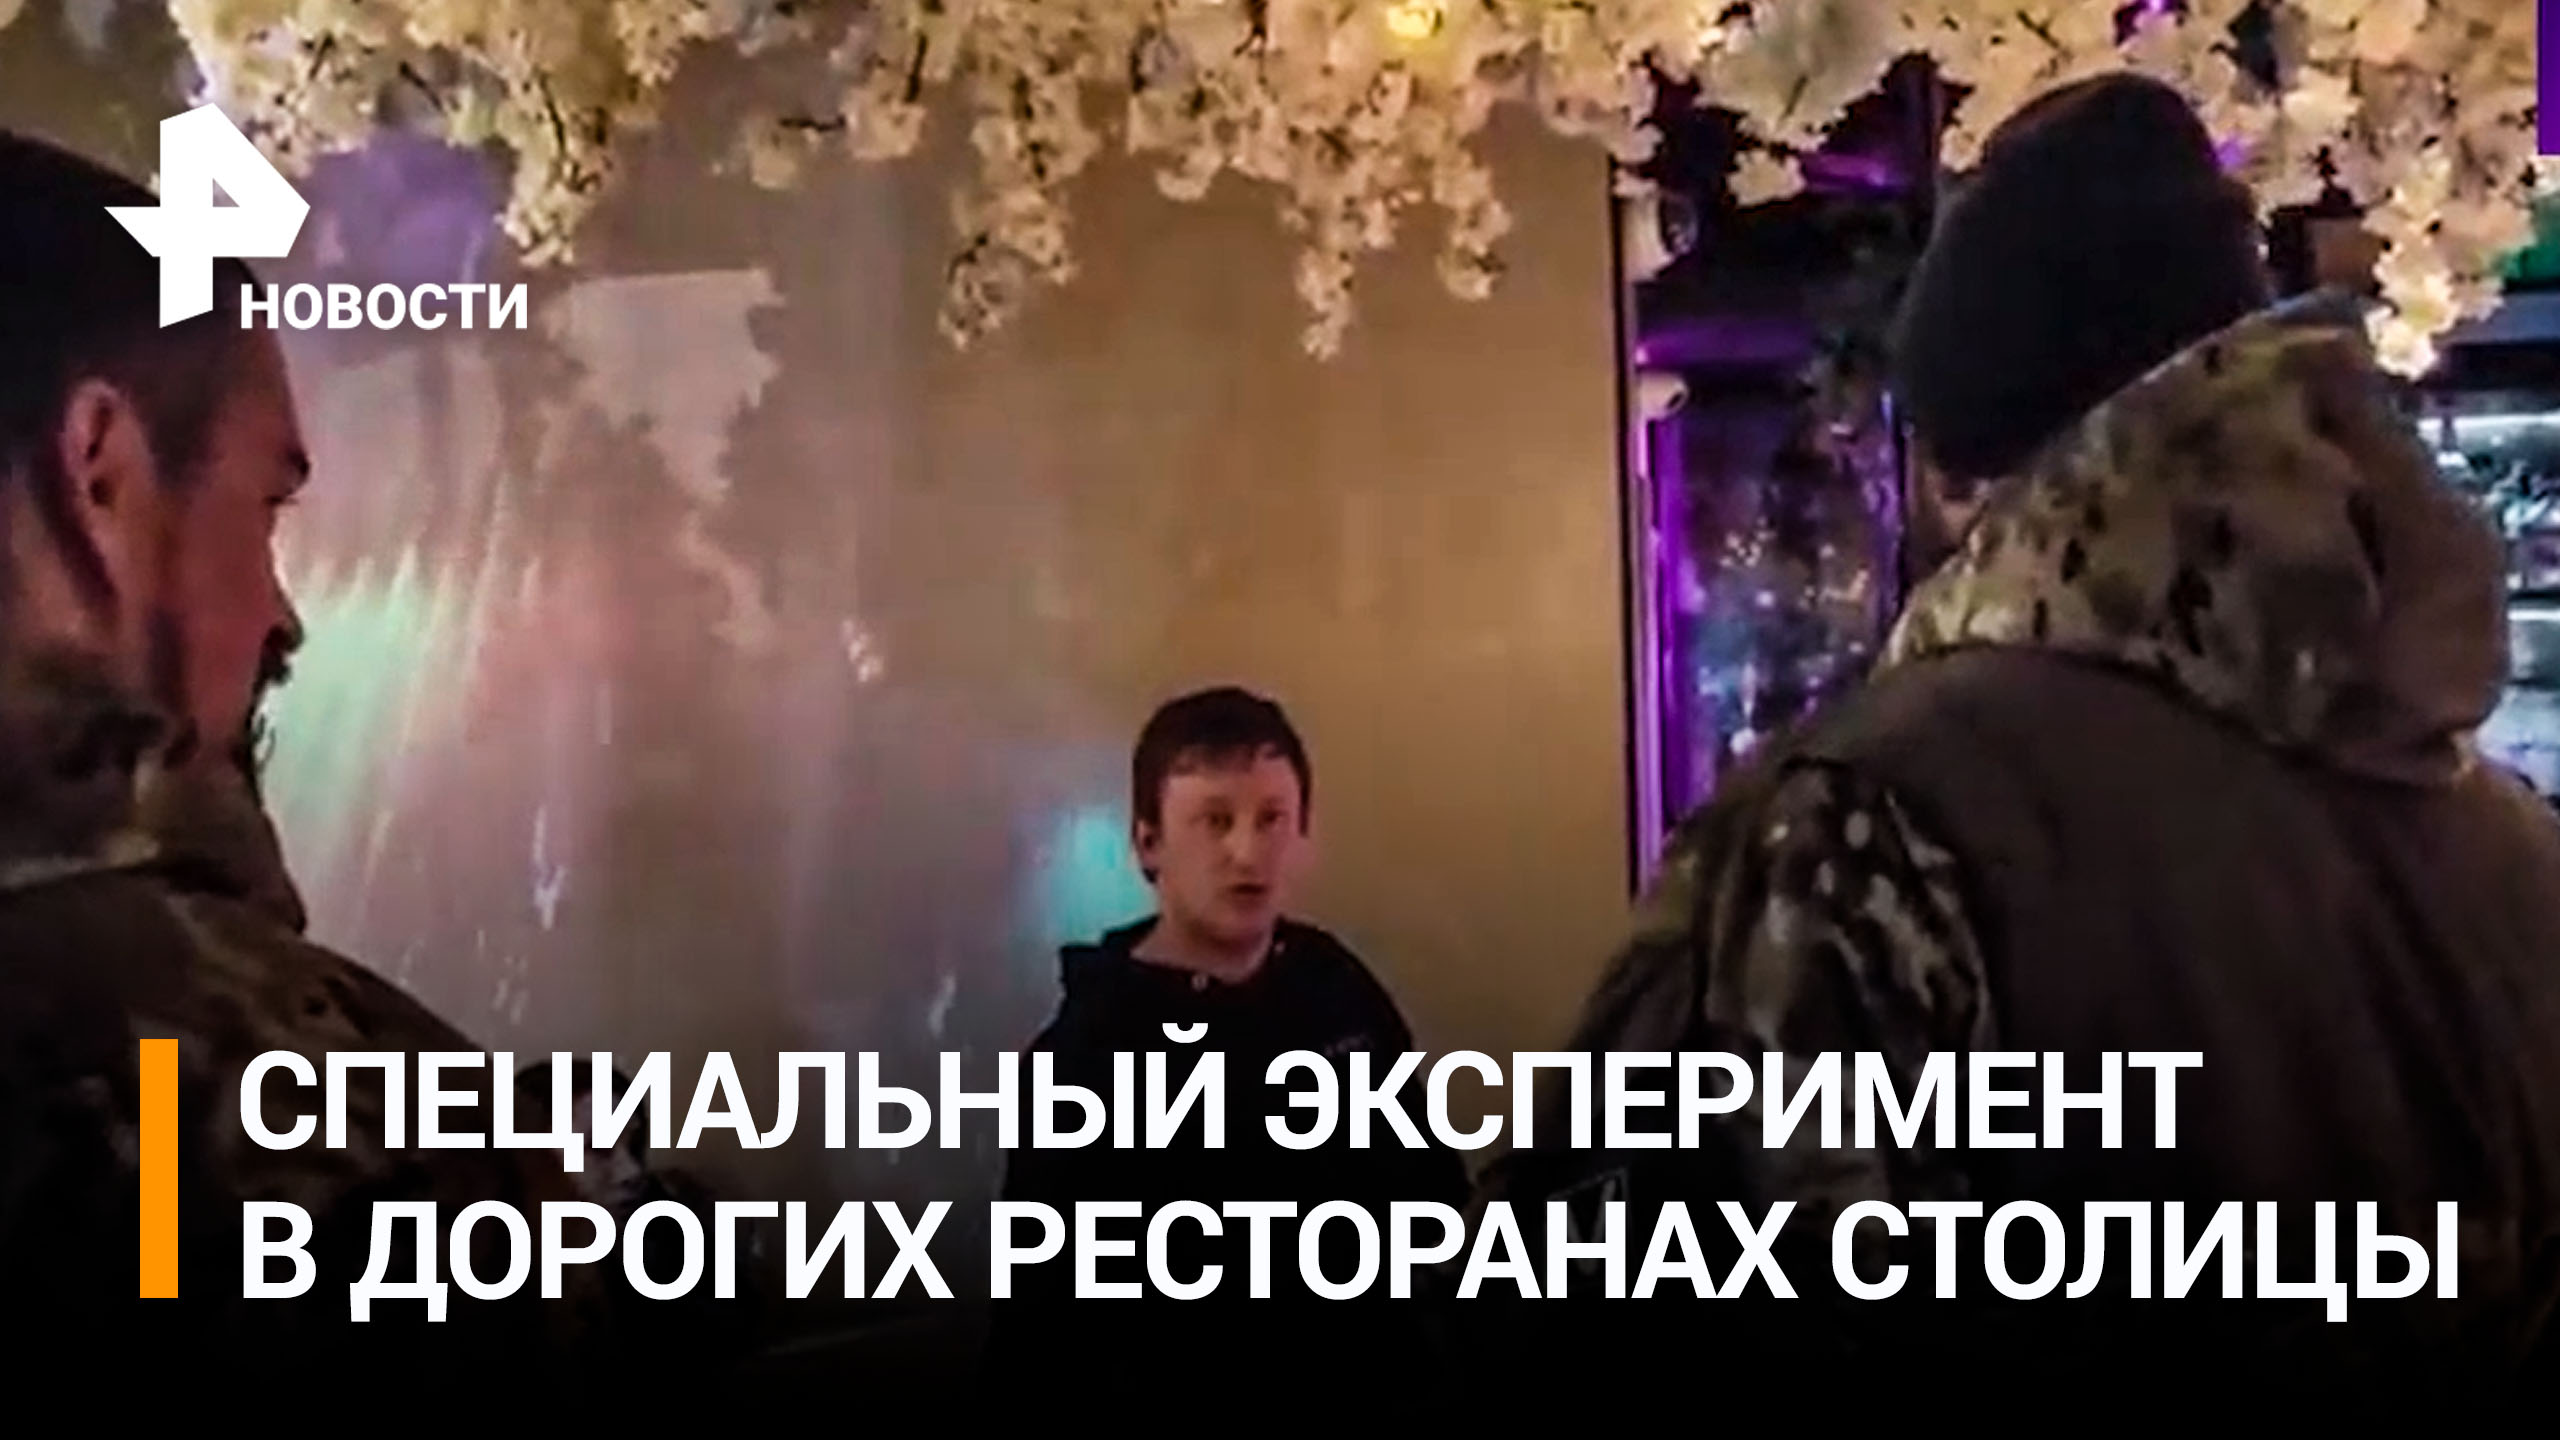 Эксперимент: пускают ли людей в военной форме со знаком V в элитные рестораны Москвы? / РЕН Новости